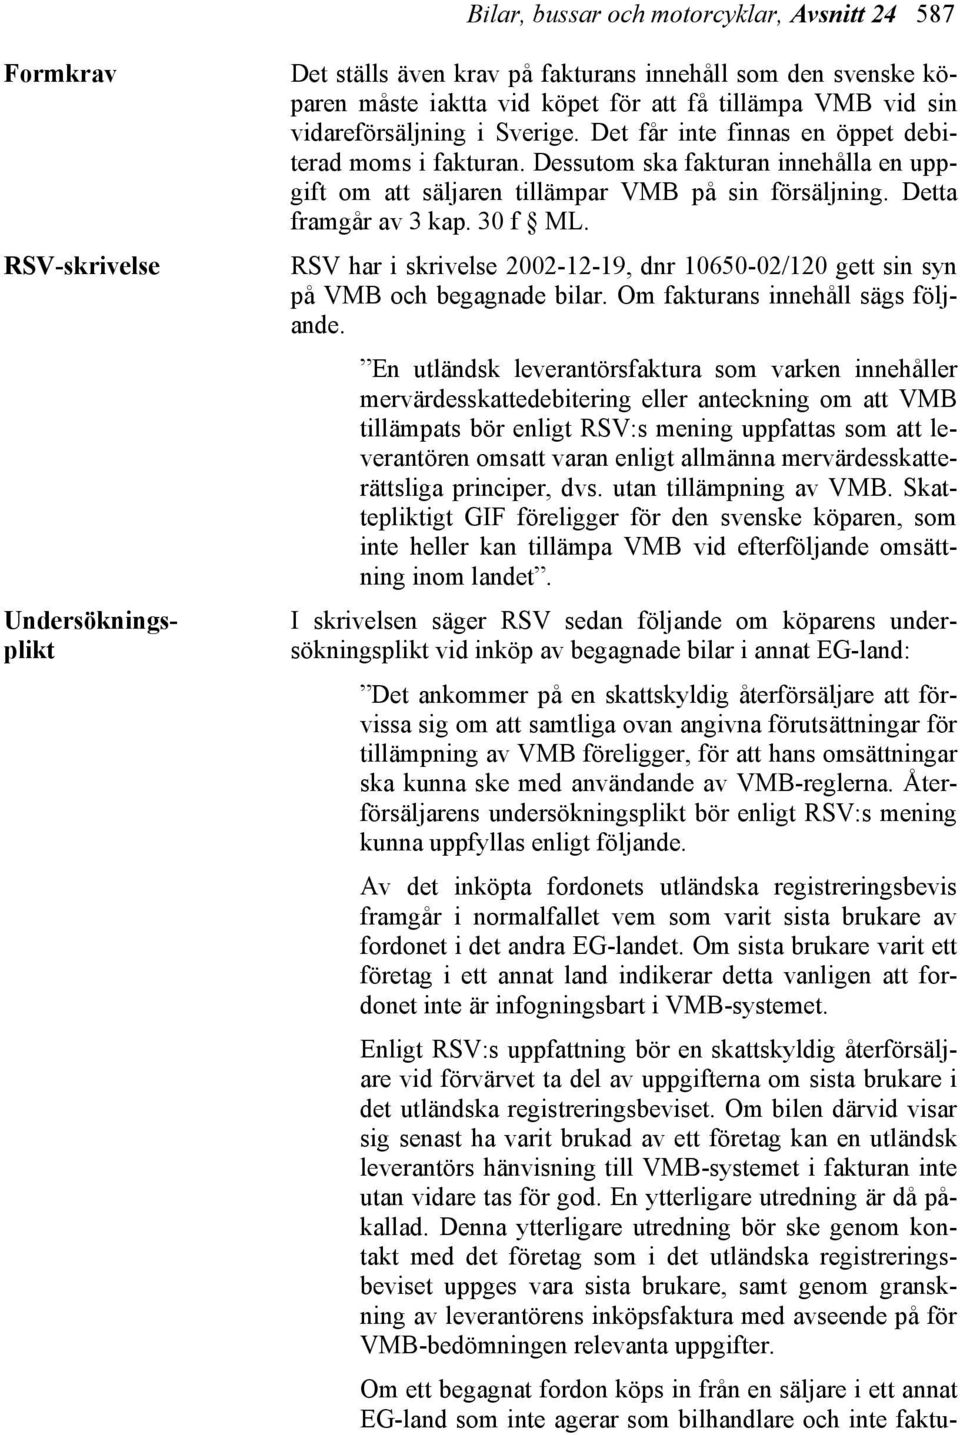 Detta framgår av 3 kap. 30 f ML. RSV har i skrivelse 2002-12-19, dnr 10650-02/120 gett sin syn på VMB och begagnade bilar. Om fakturans innehåll sägs följande.